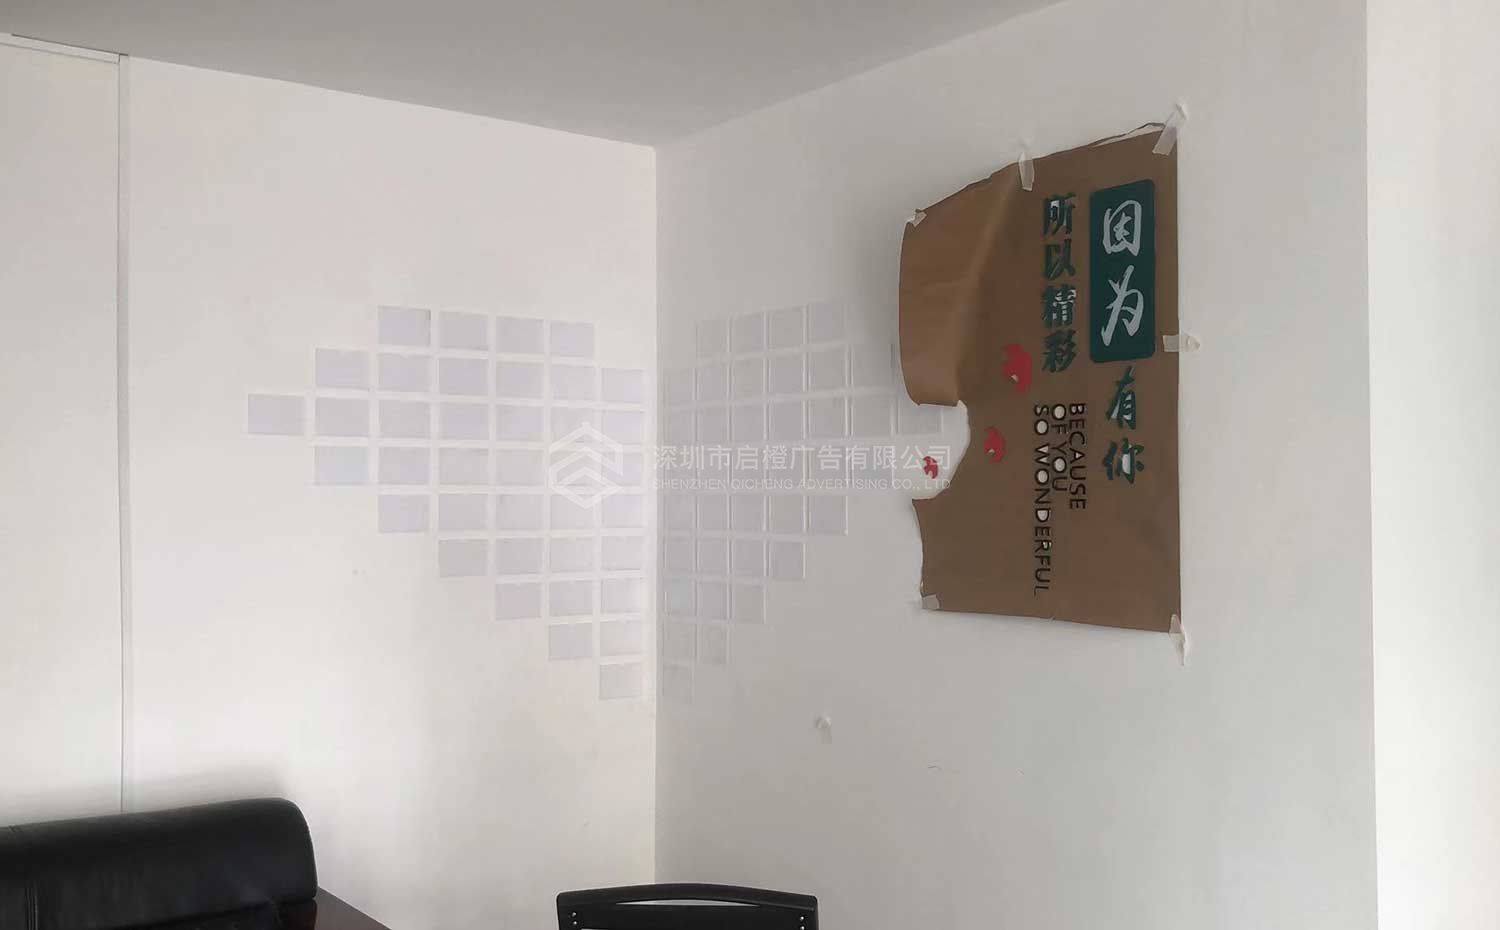 一零六四激光技术有限公司文化墙上墙案例效果图片(图7)